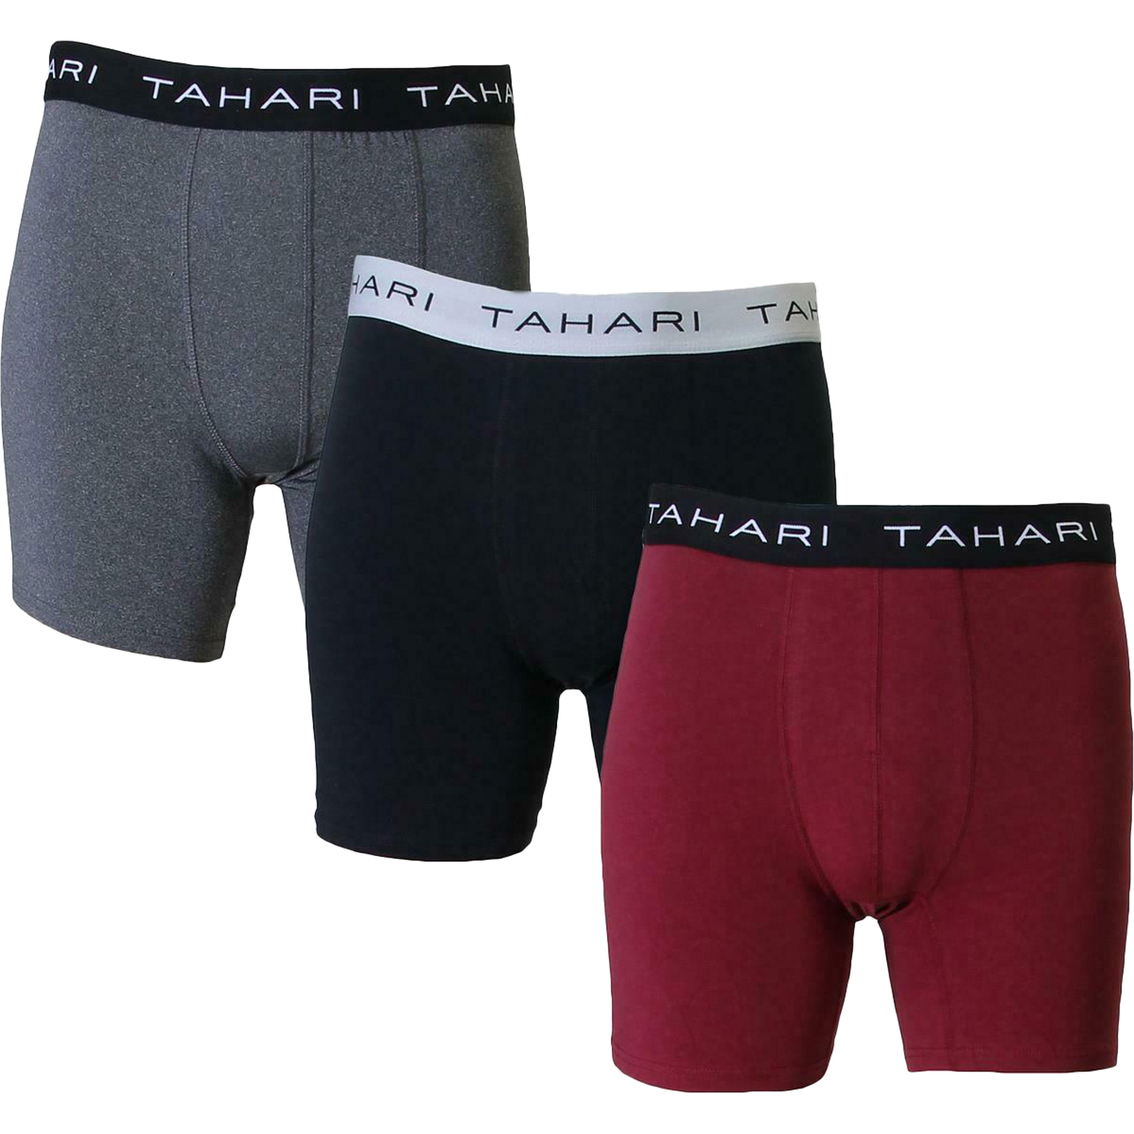 Tahari Premium Boxer Briefs 3 Pk., Underwear